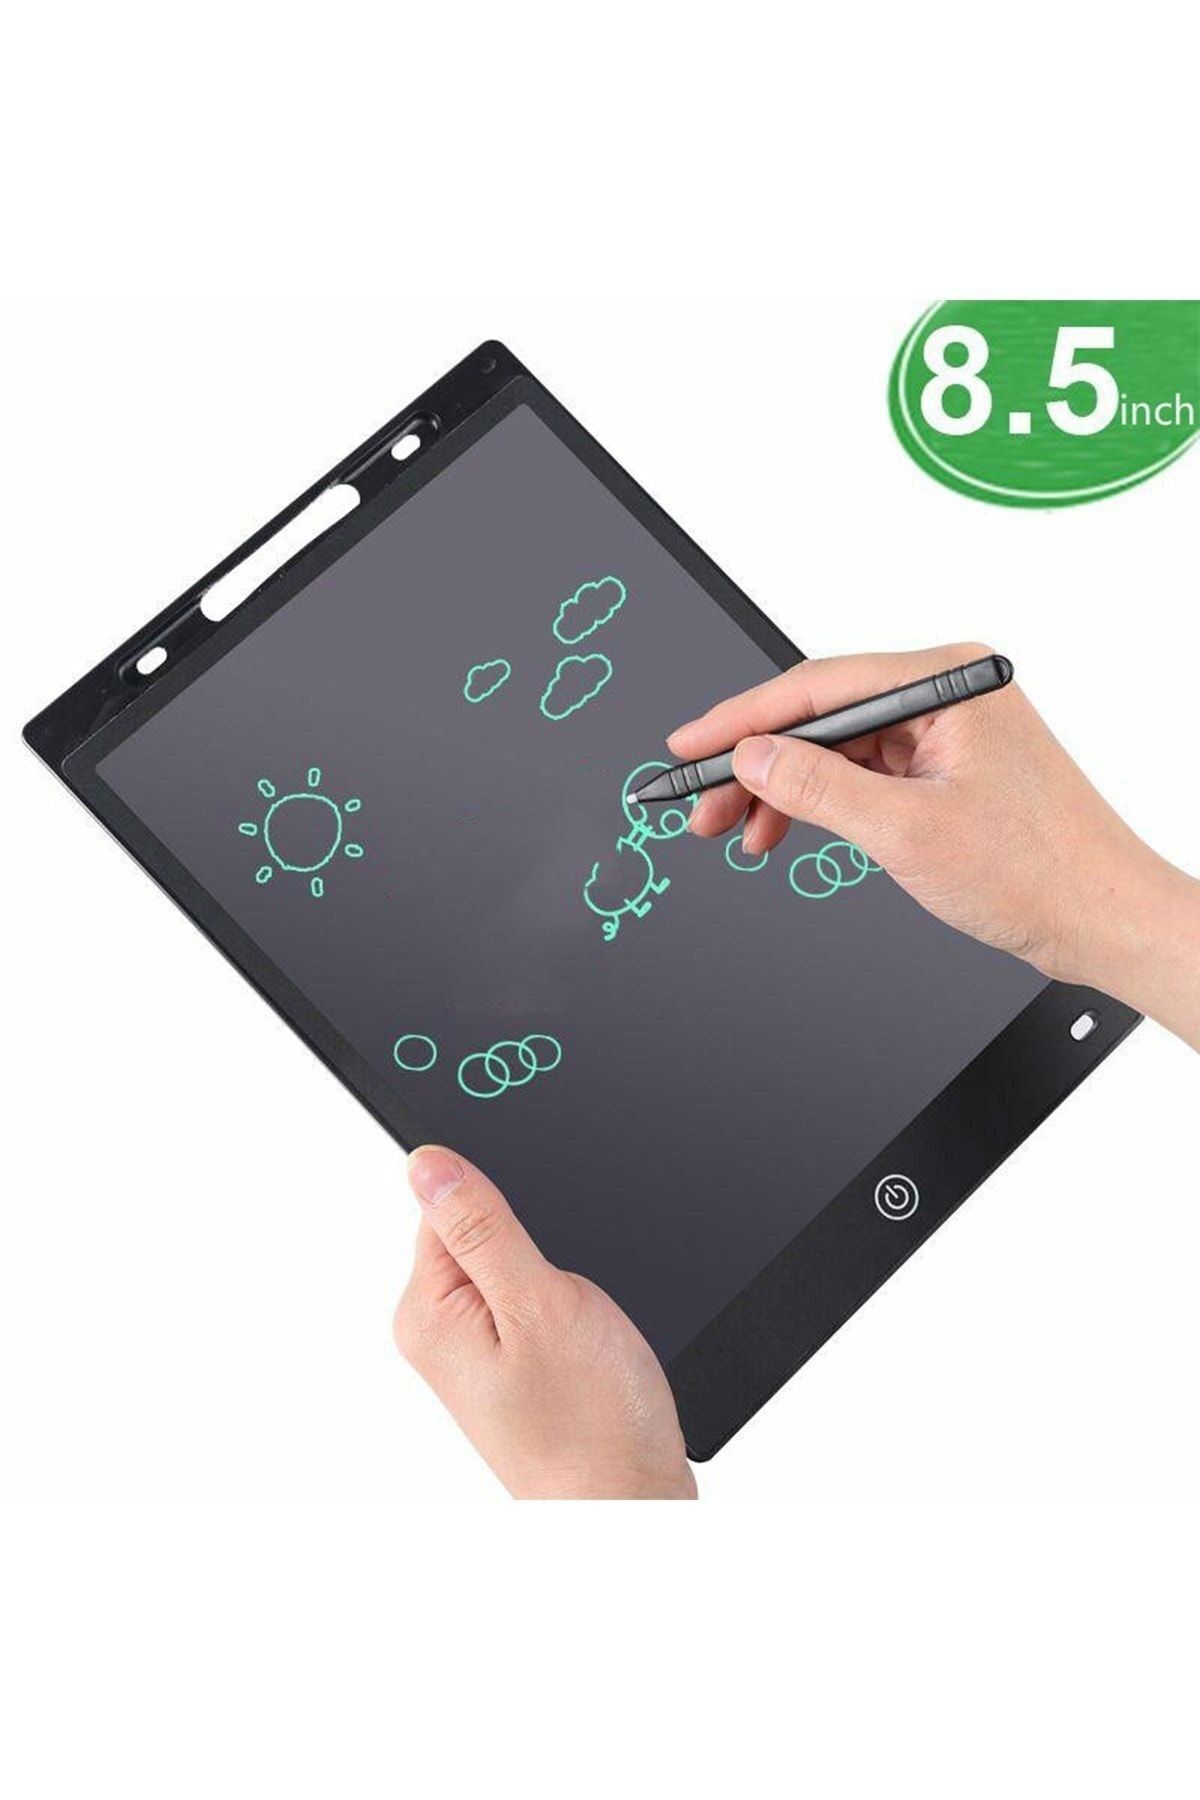 Benefse Kalemli Writing Dijital Çizim Yazı Tahtası 8.5 Inç Not Yazma Tableti Grafik Eğitici Tablet 1 Adet